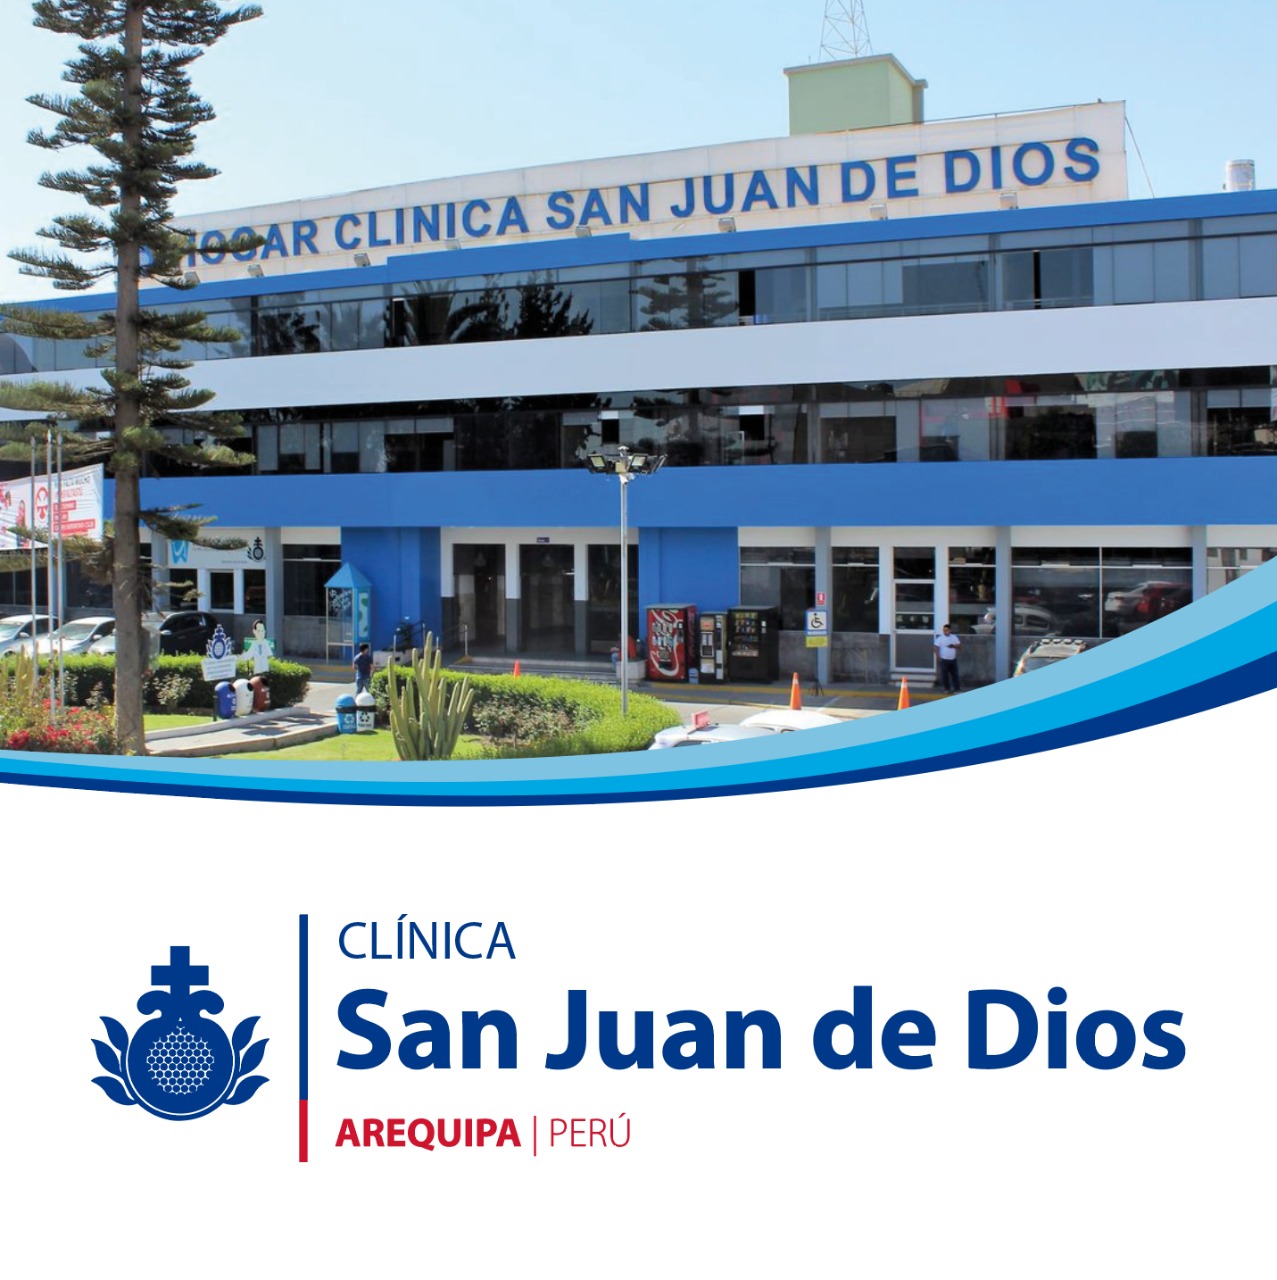 Centro Peru Clinica San Juan de Dios Arequipa | Orden Hospitalaria San Juan de Dios